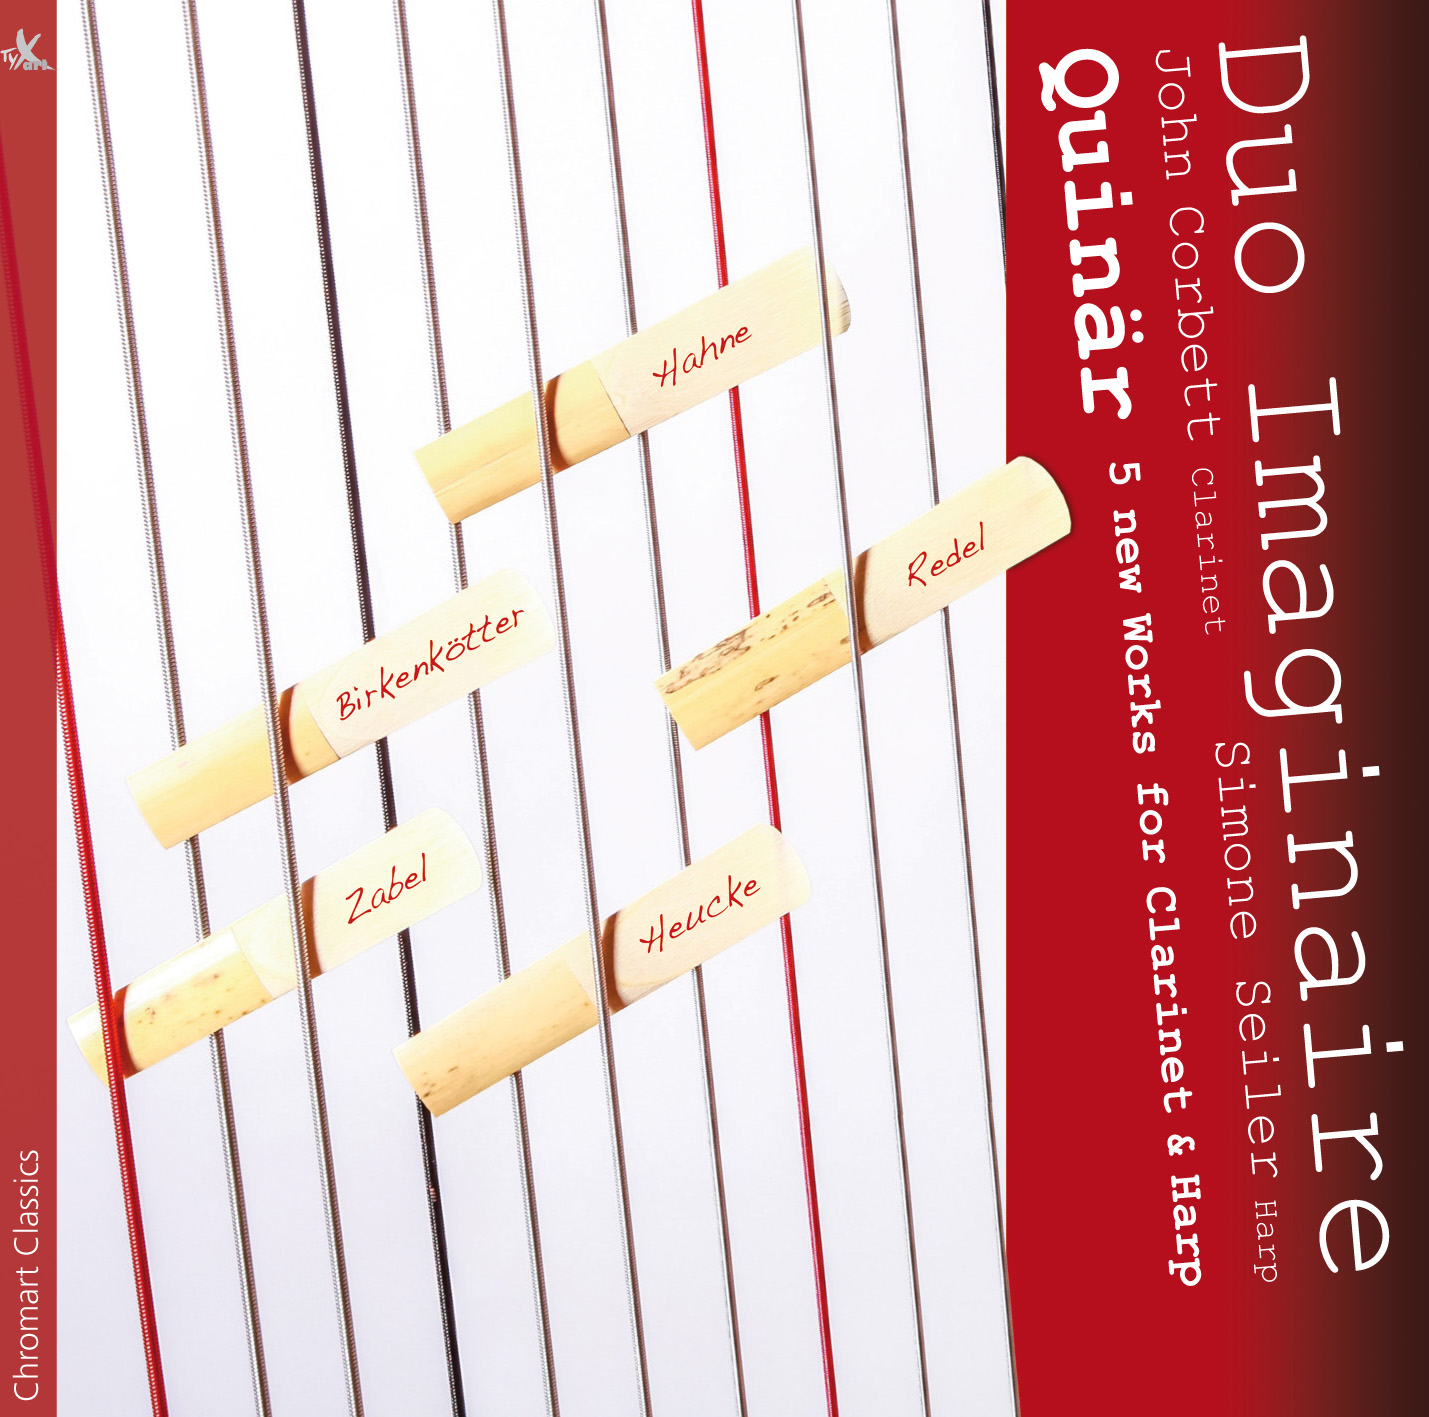 Quinär - 5 neue Werke für Klarinette & Harfe